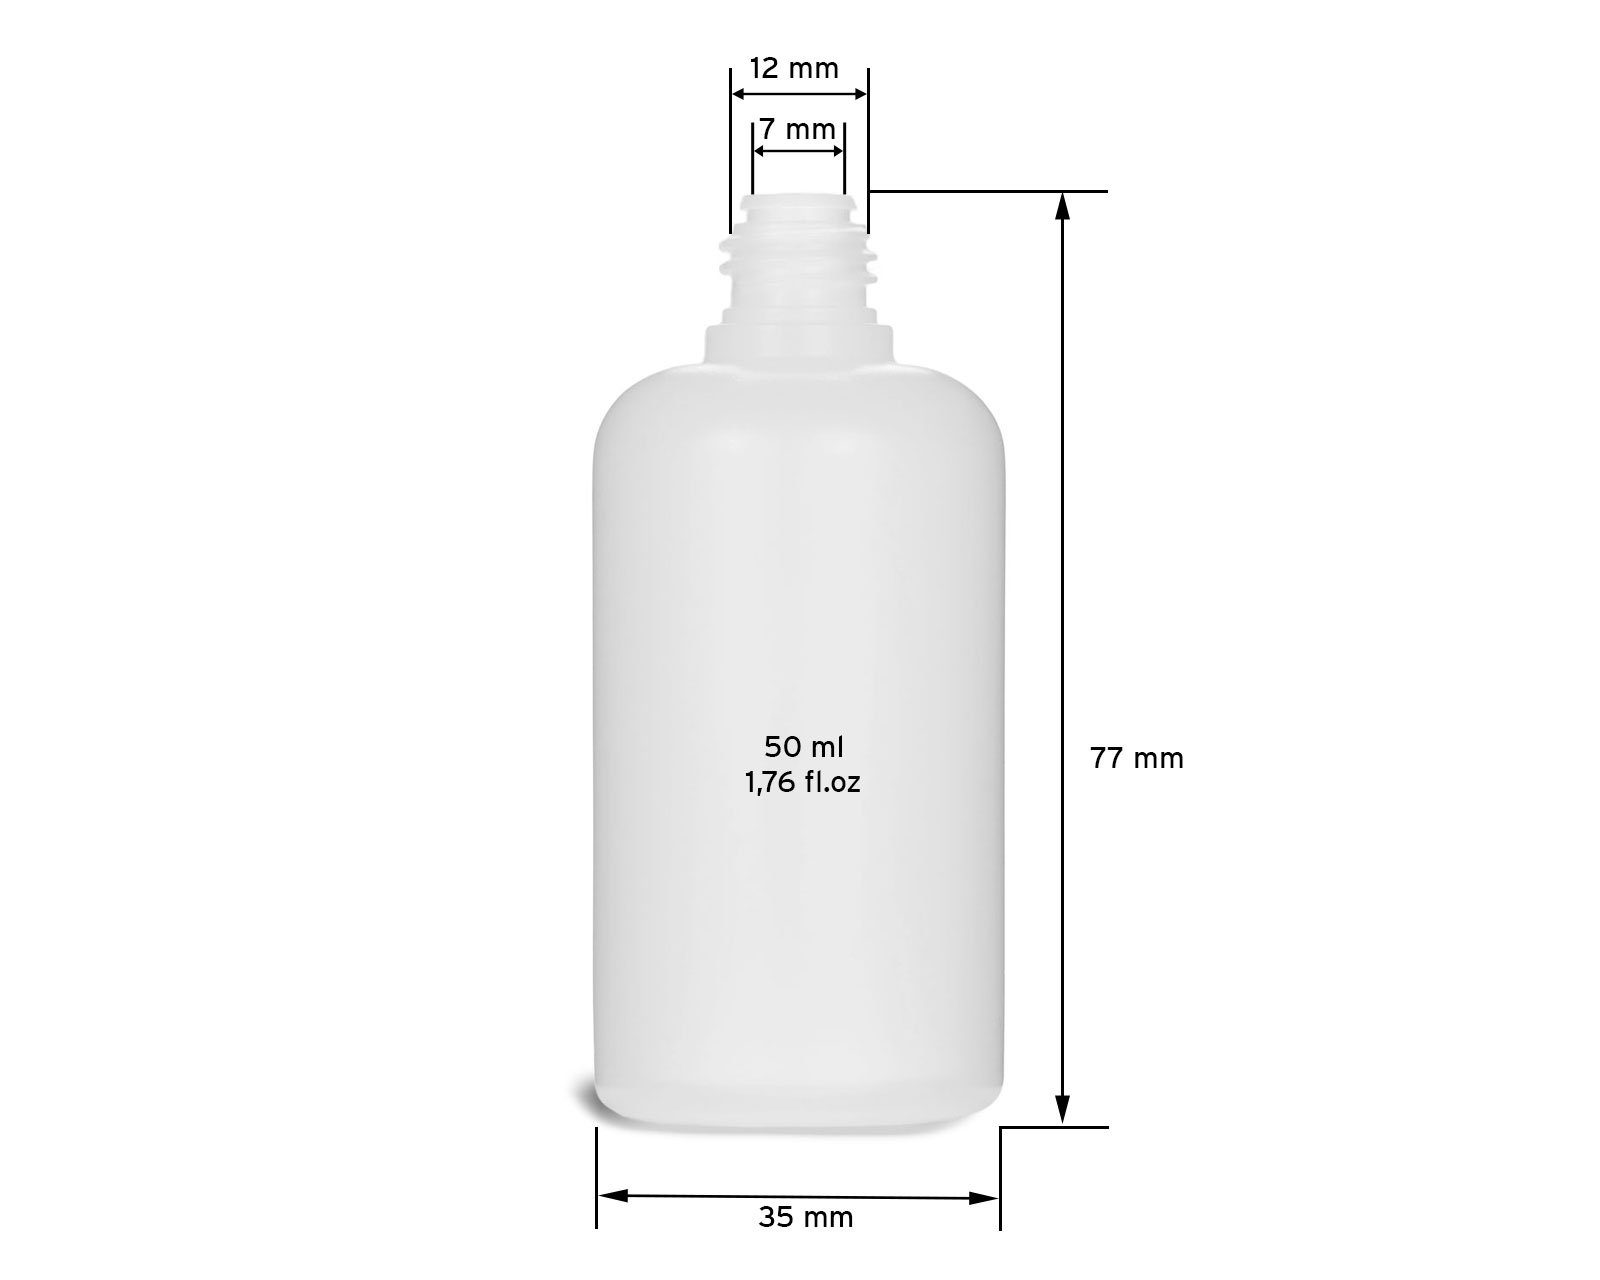 aus G14, OCTOPUS Nadelkappe LDPE, 10 50 ml Tropfverschluss (10 Kanister mit St) Plastikflaschen